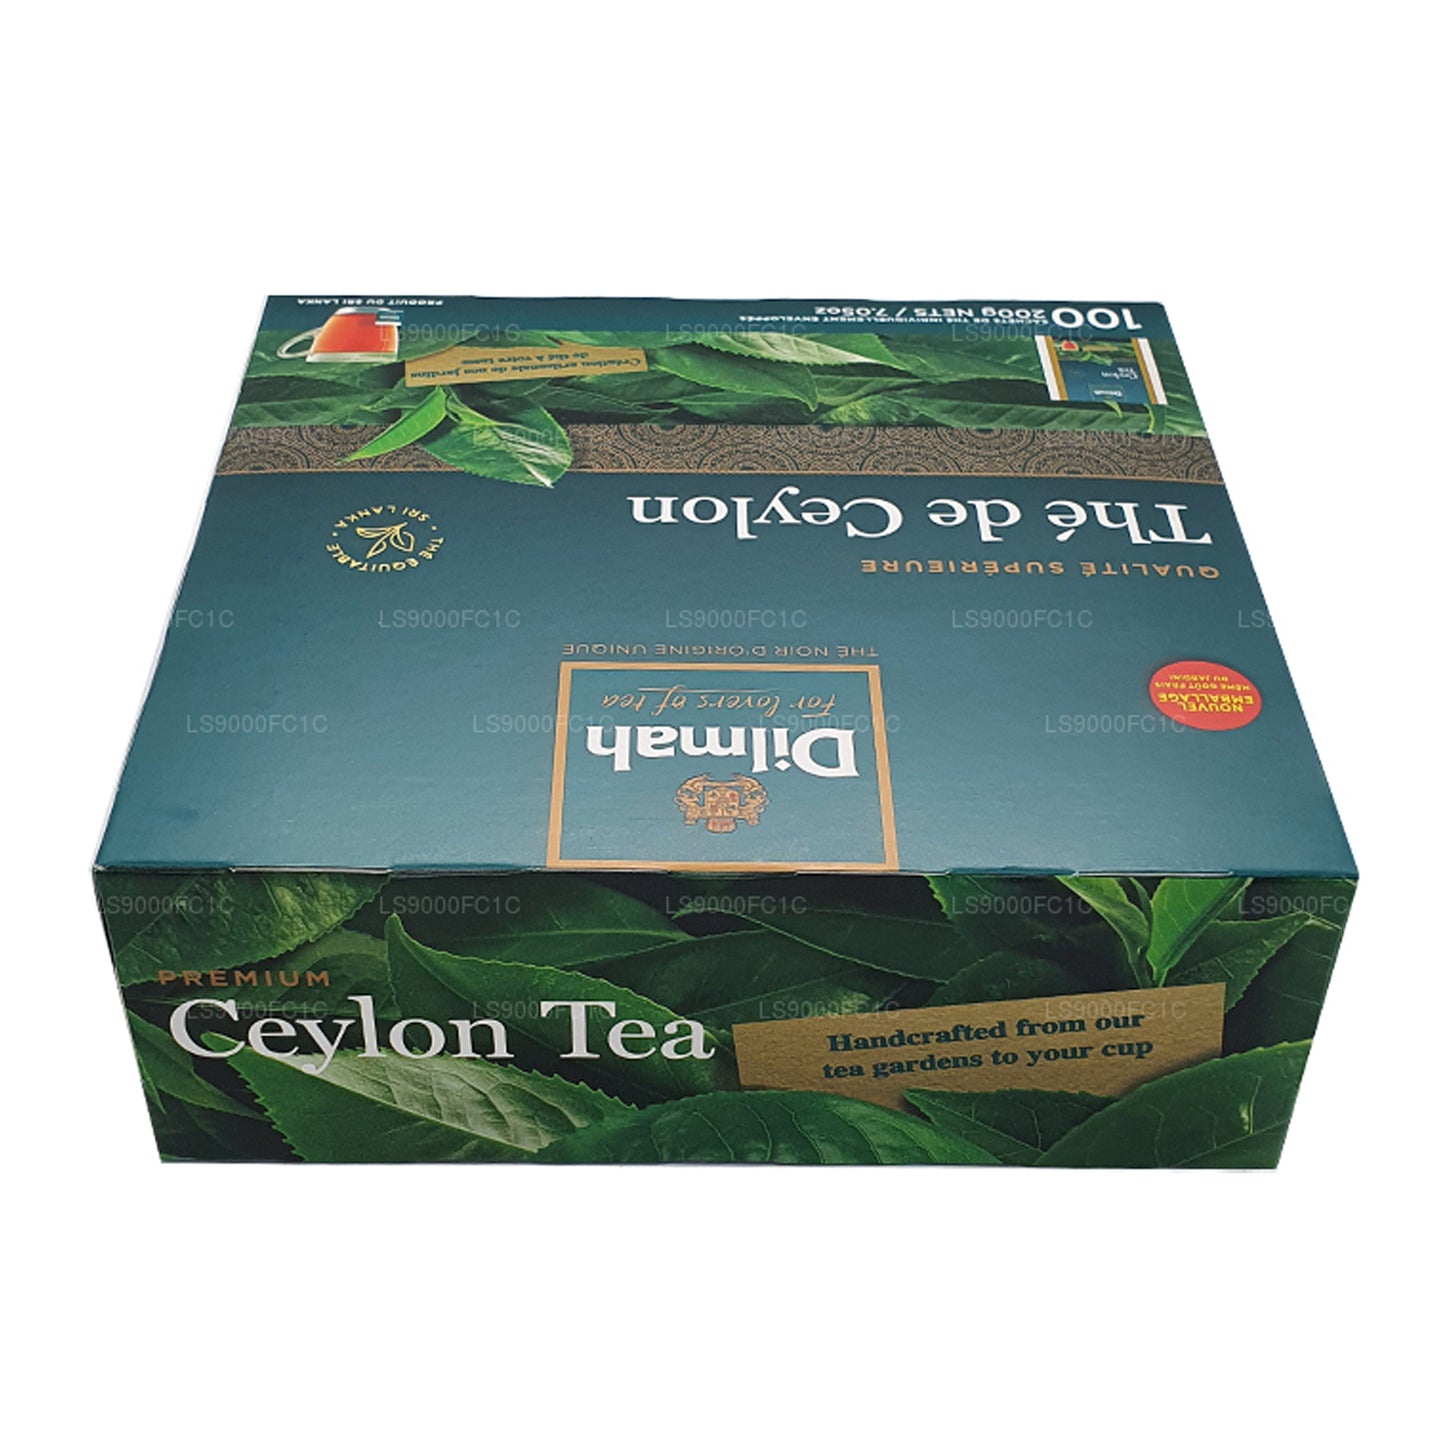 Dilmah Premium Ceylon Tea (200g) Individually Wrapped 100 Tea Bags